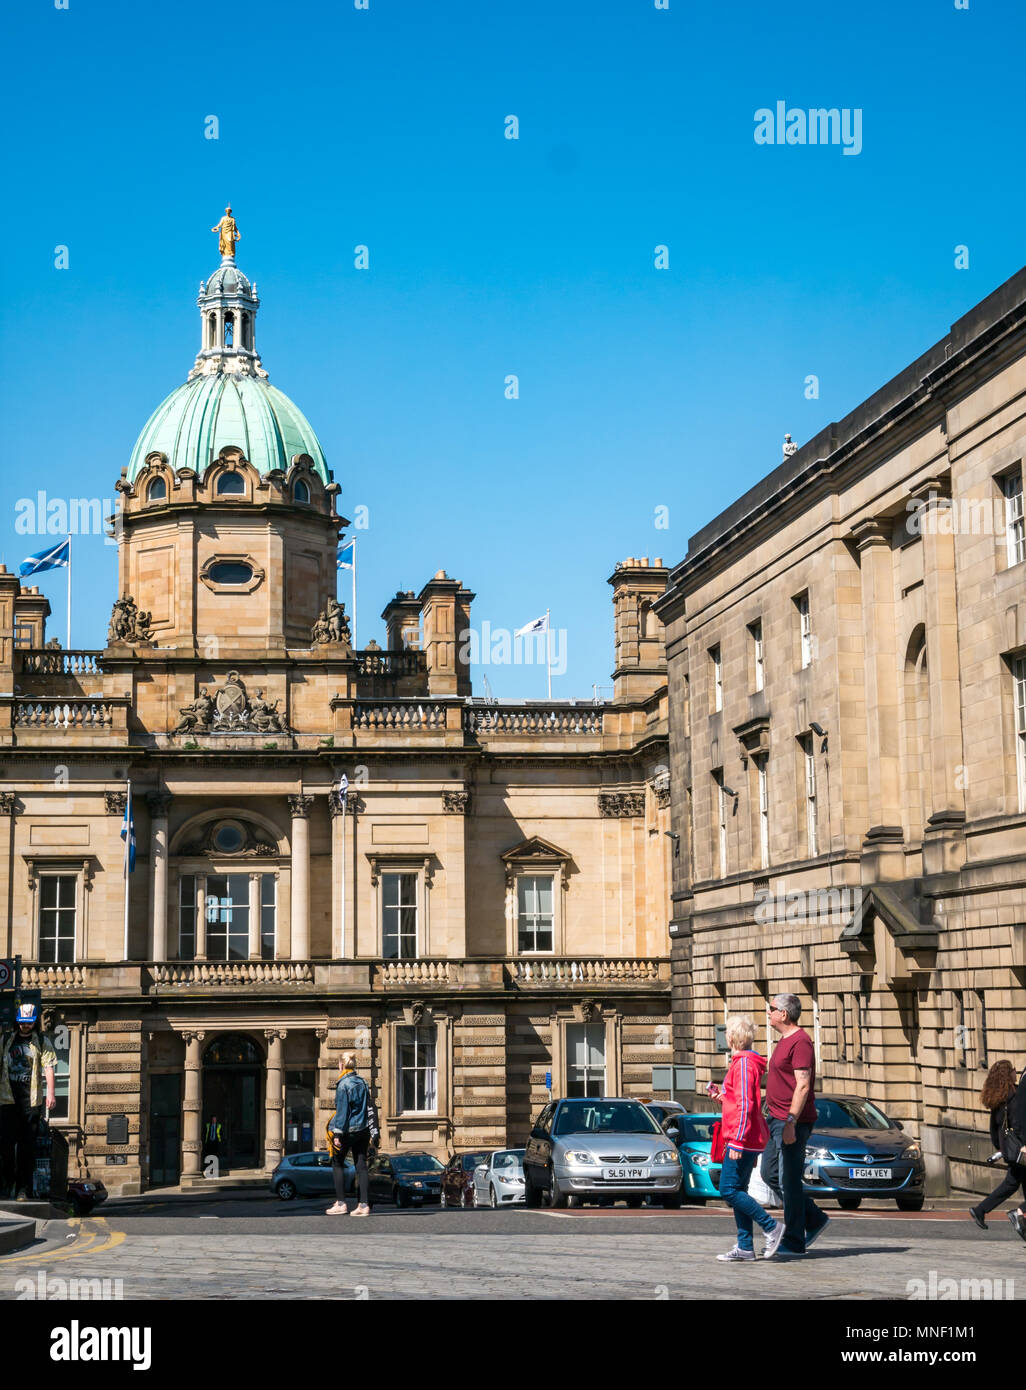 Les touristes marche sur Royal Mile Crossing road passé grand bâtiment de Bank of Scotland siège avec dôme en cuivre et bleu ciel Banque D'Images